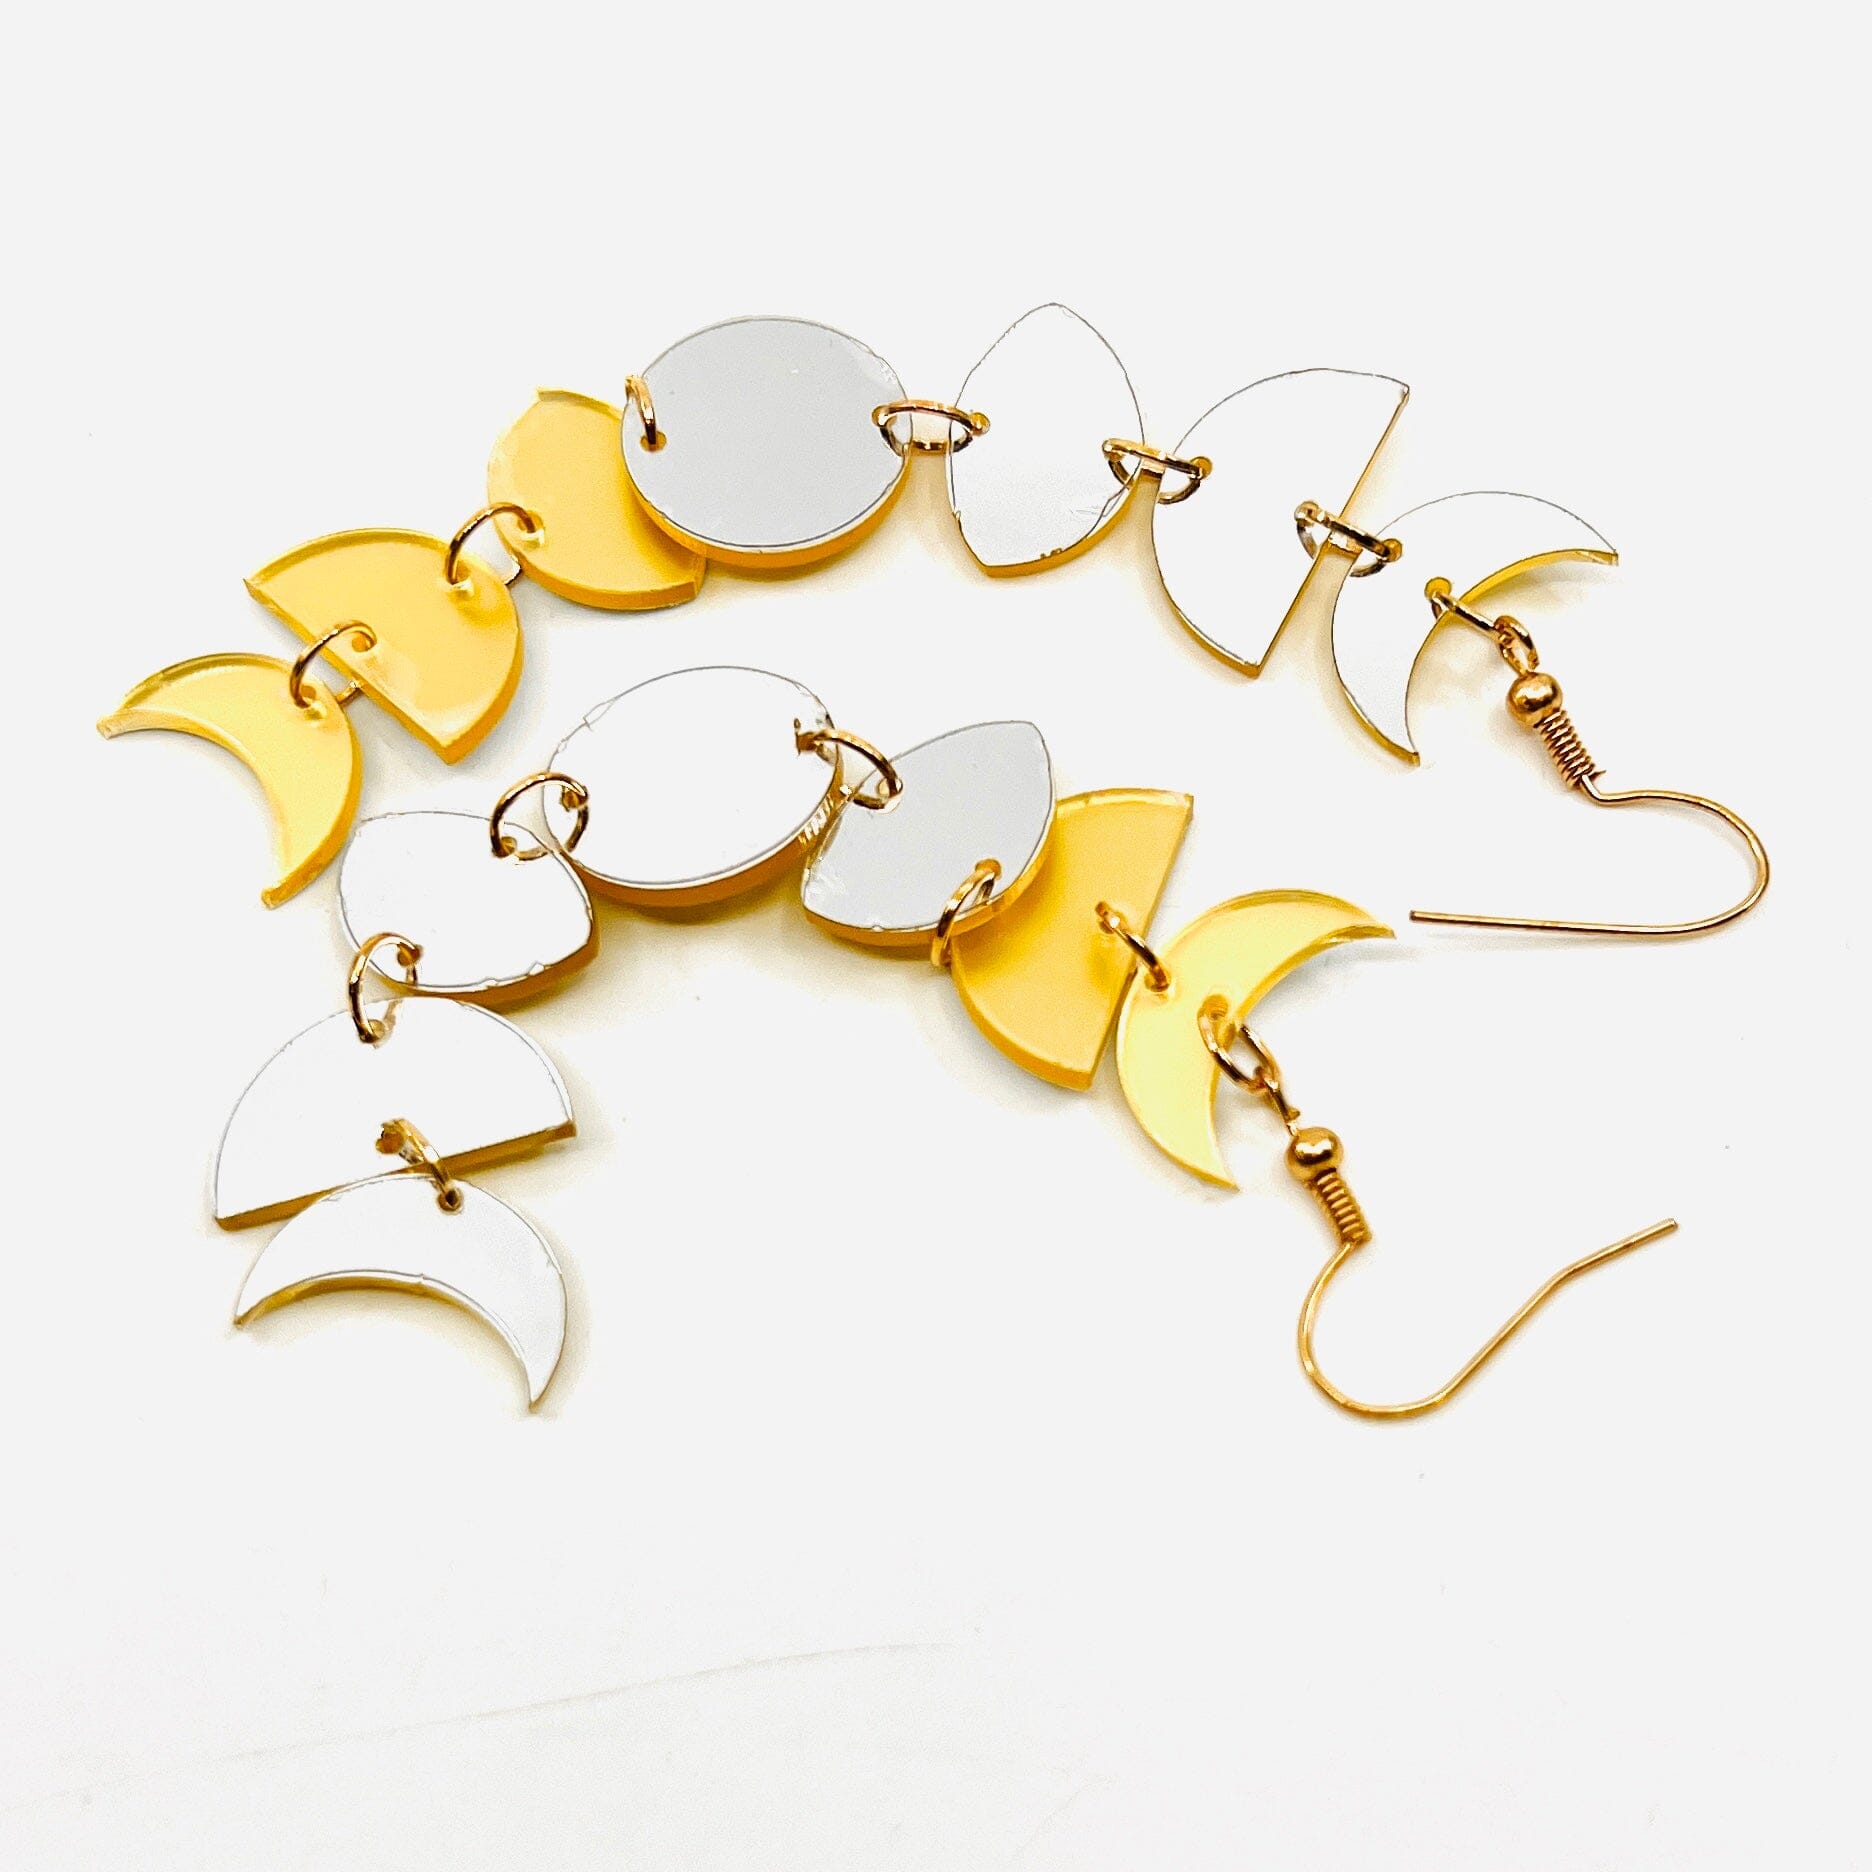 Acrylic Earrings, Moon Phase Jewelry - 